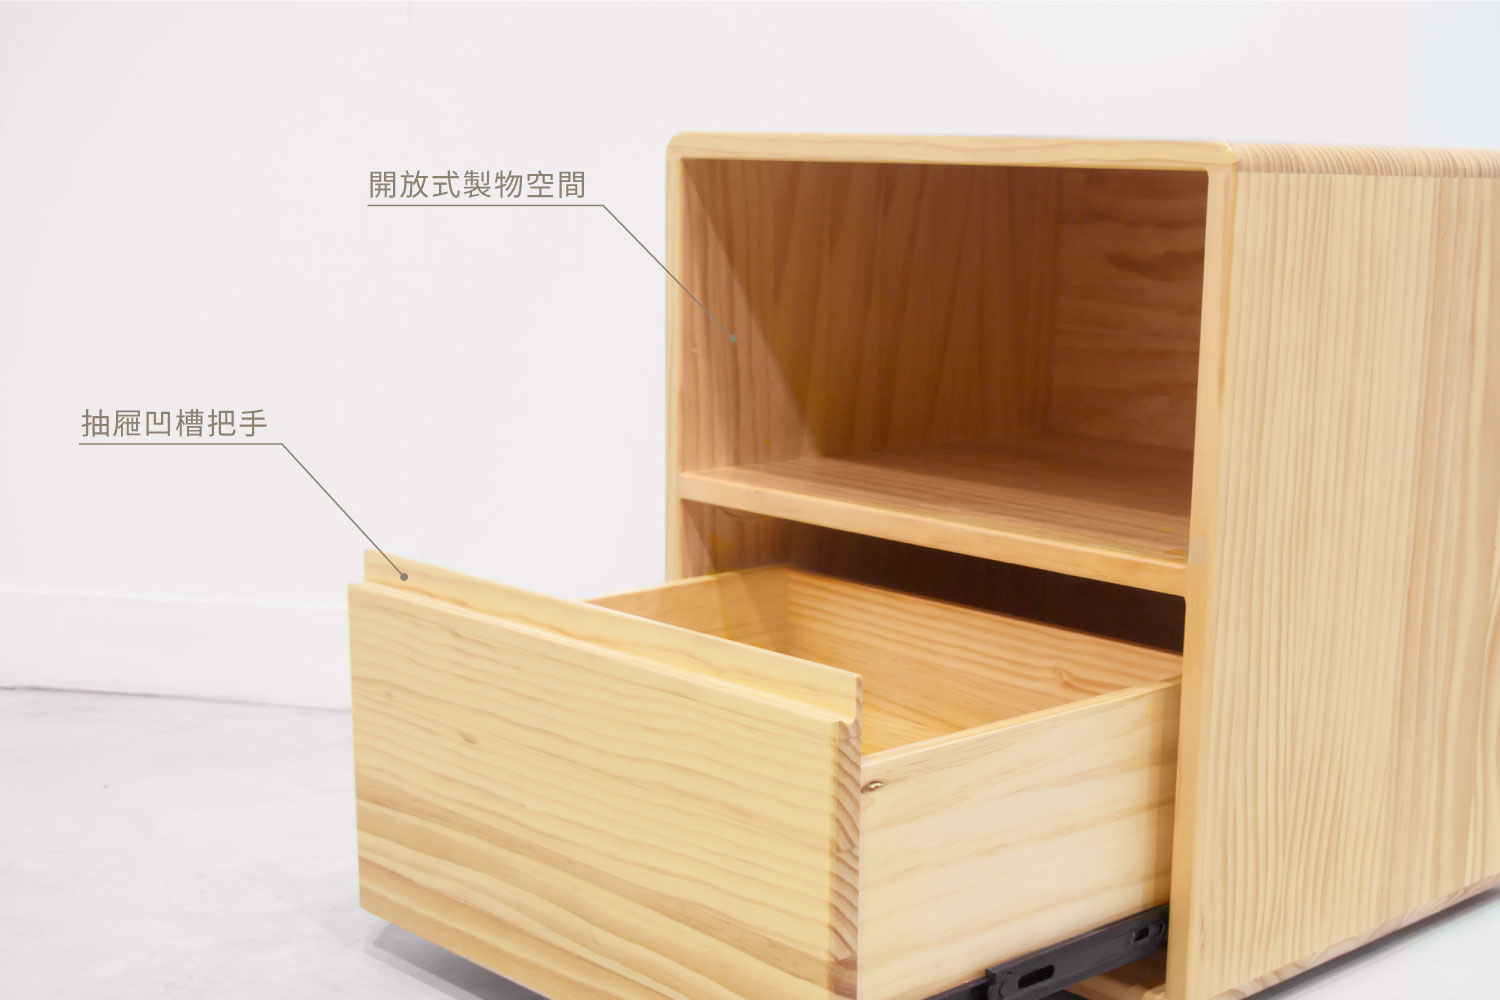 LEHO 樂活床頭櫃-設計說明